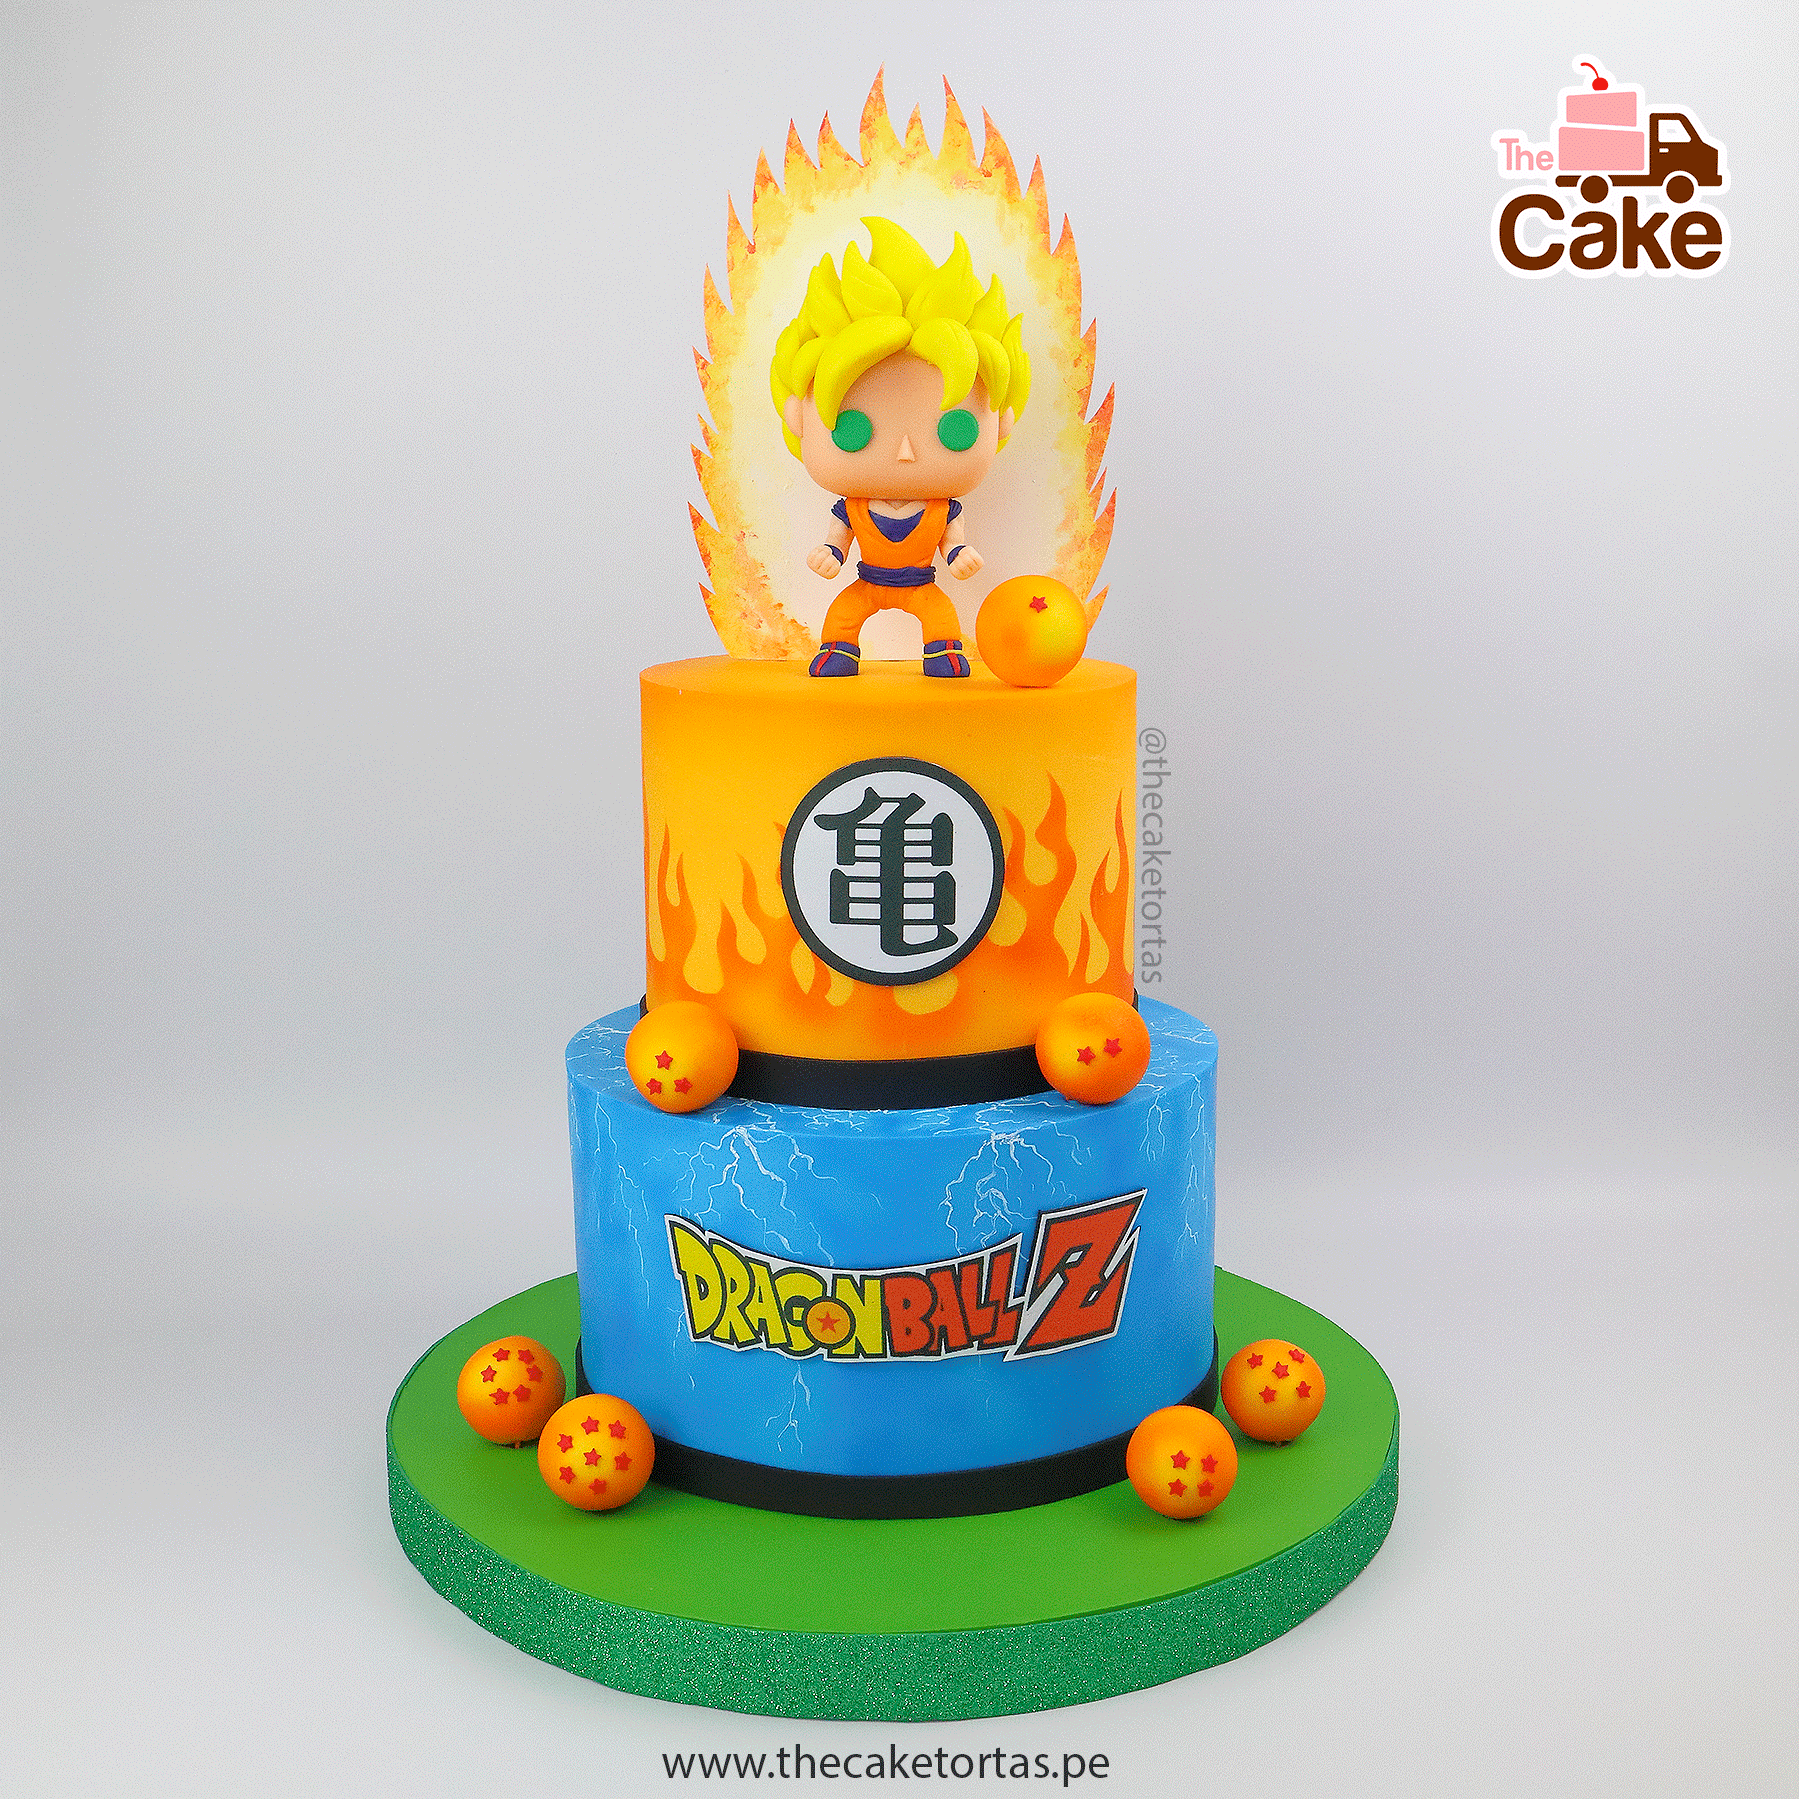 Torta Goku Funko Pop 2 - The Cake Tortas